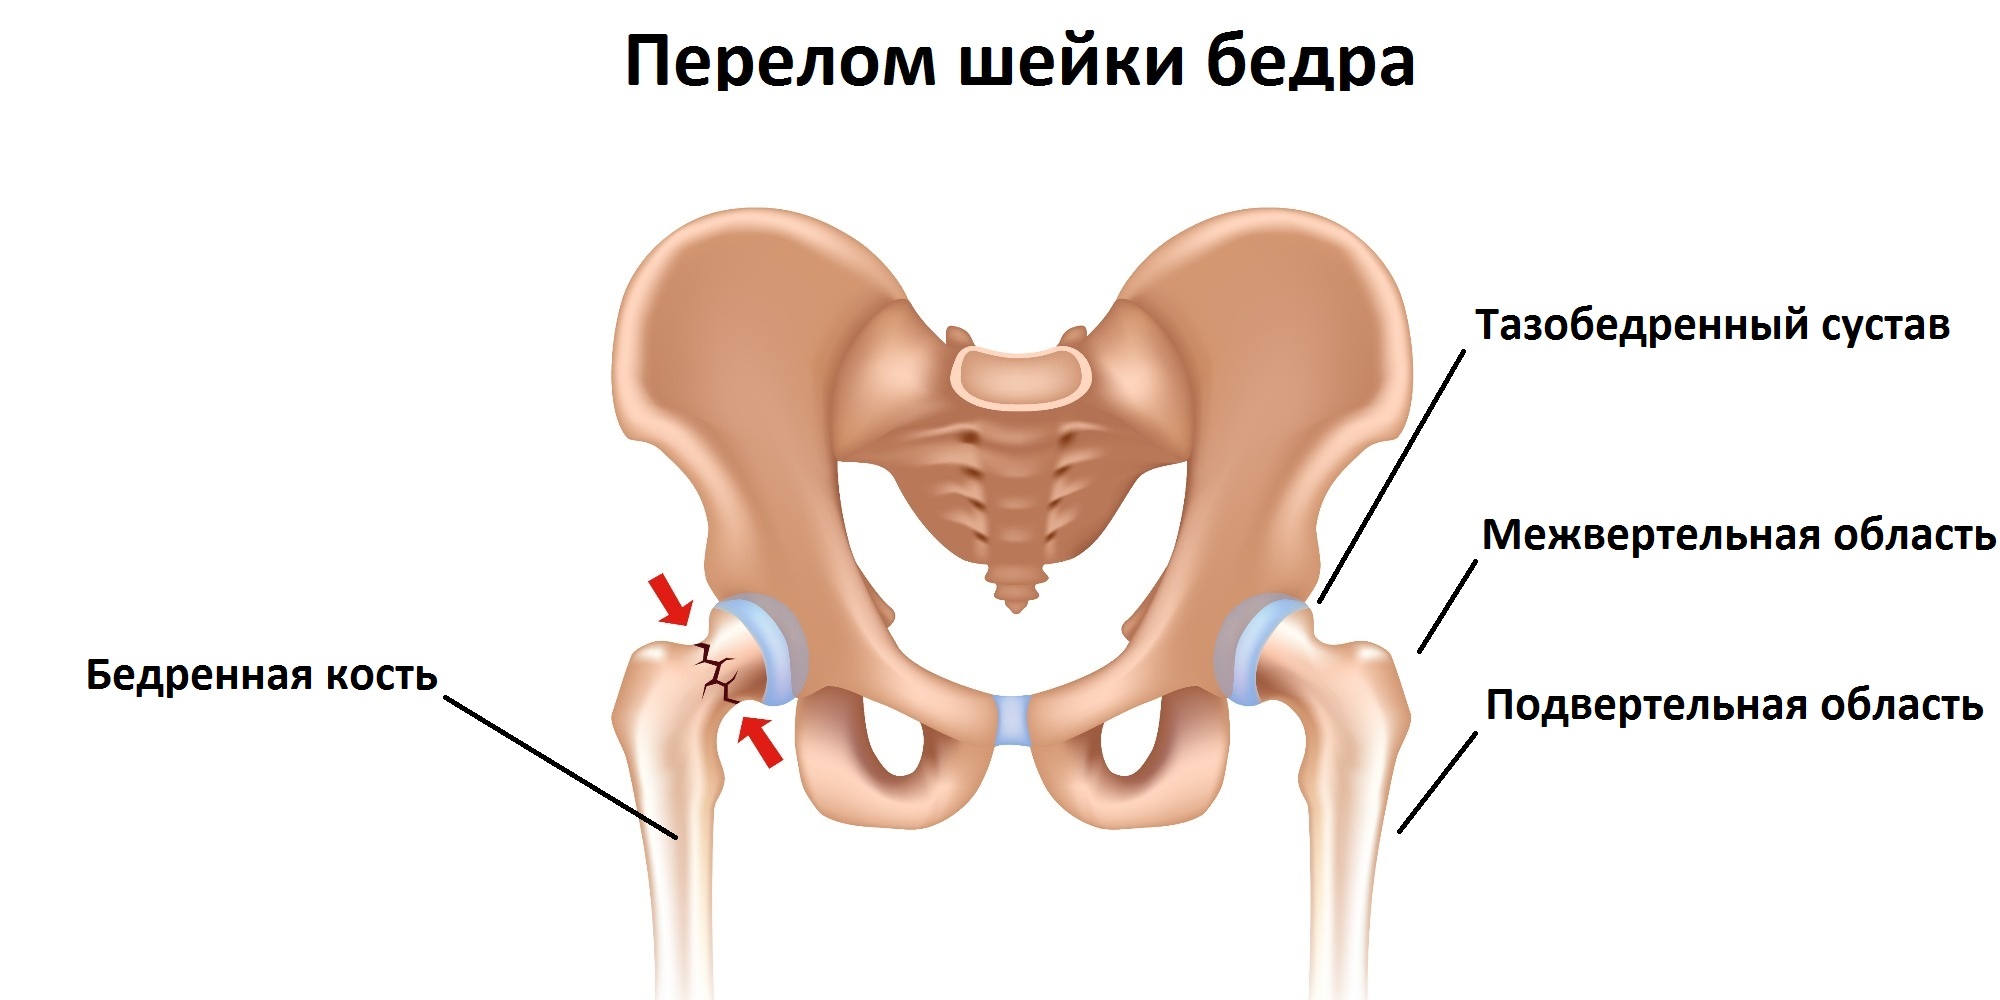 Сделать операцию шейки бедра. Шейка тазобедренного сустава перелом. Перелом тазобедренного сустава и кости. Шейка бедра у человека перелом. Перелом шейки тазовой кости.